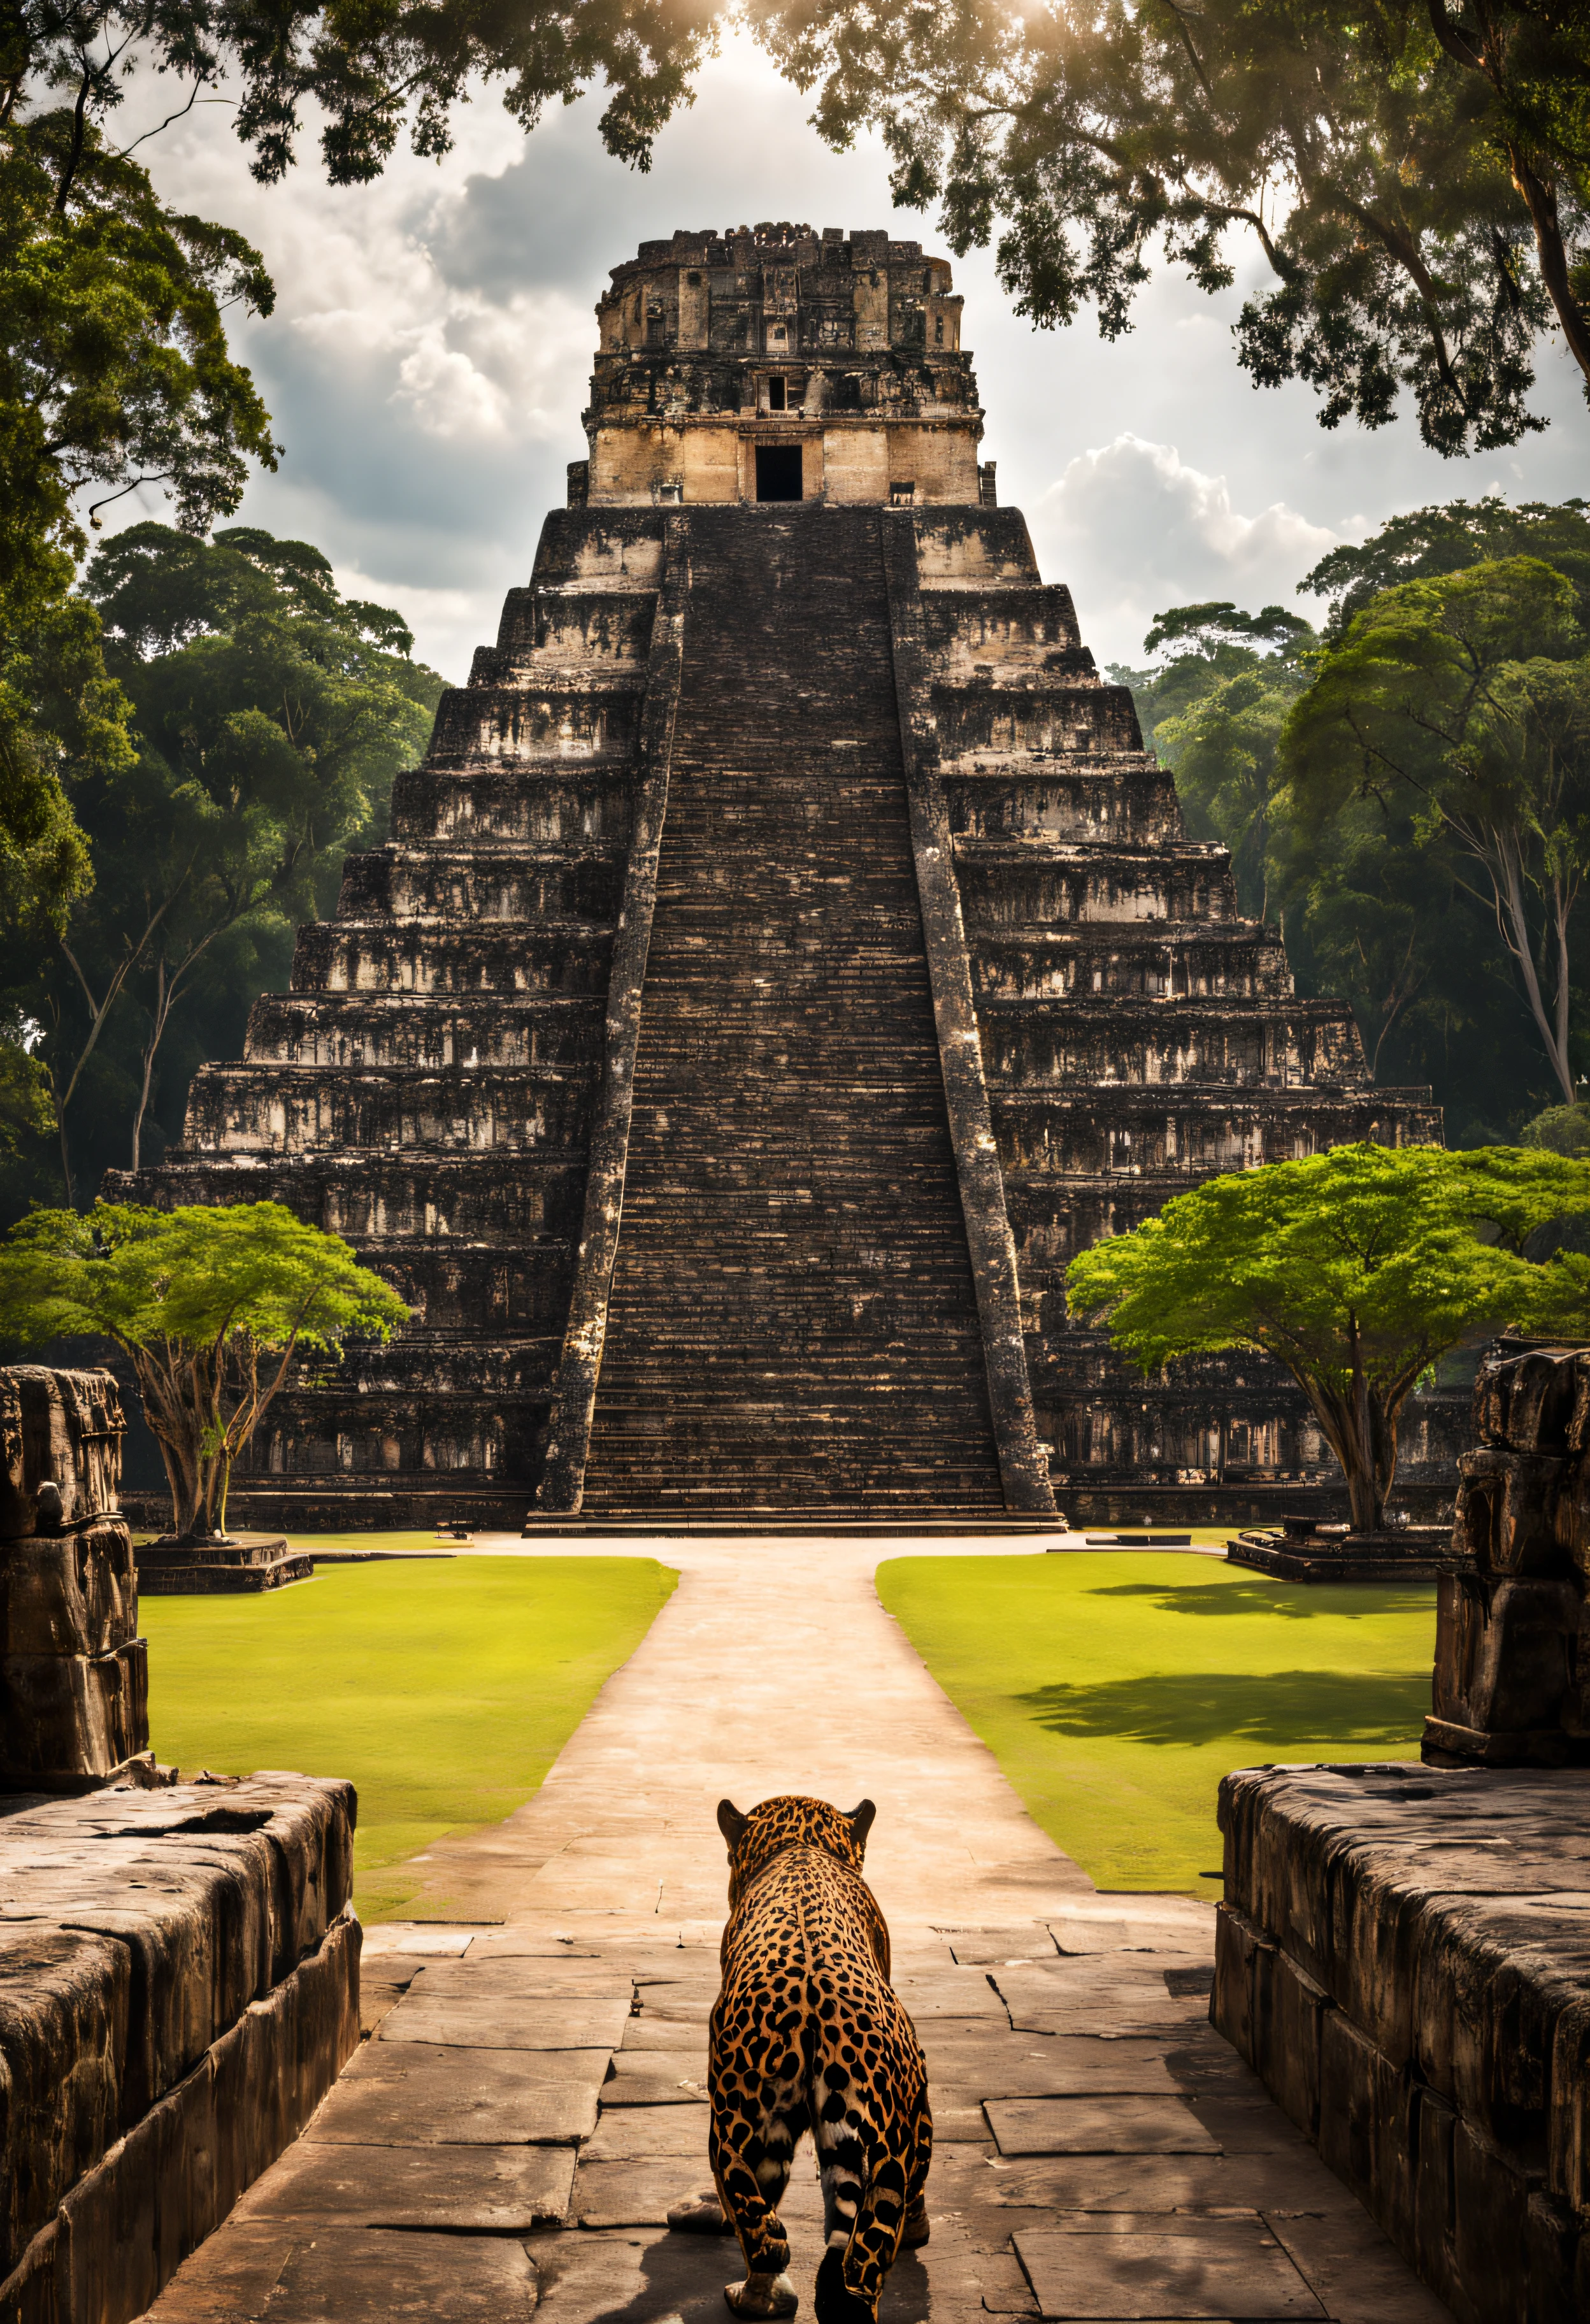 une photo épique du temple du grand jaguar, cinématique, place, des arbres, forêt, cité maya, par derrière , imposant, Perspective, chef-d&#39;œuvre, meilleure qualité